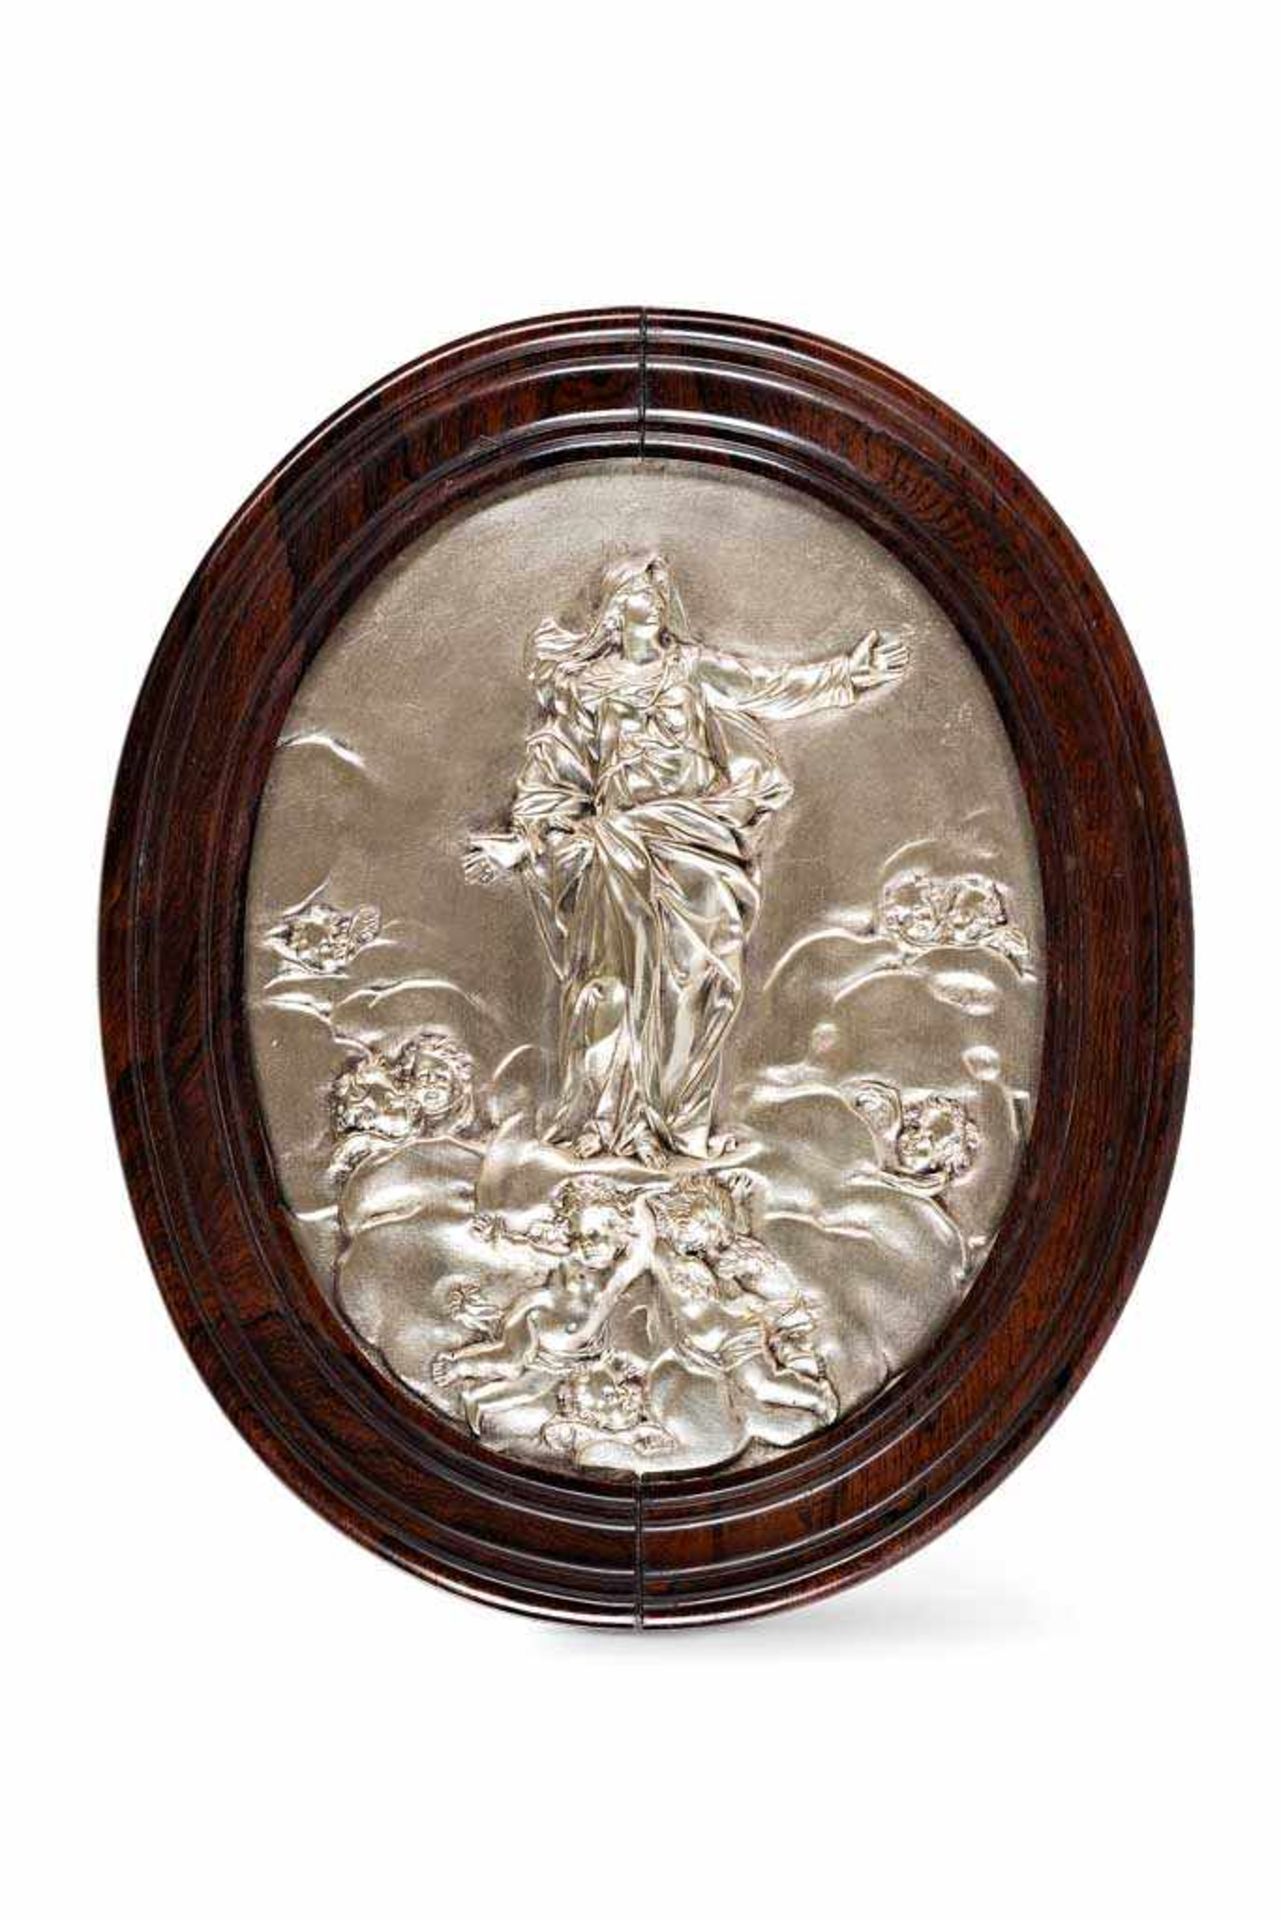 Bronzerelief. Immaculata, von Engeln getragen. Versilbert. 19. Jh. Oval, 35,5 x 28 cm. R